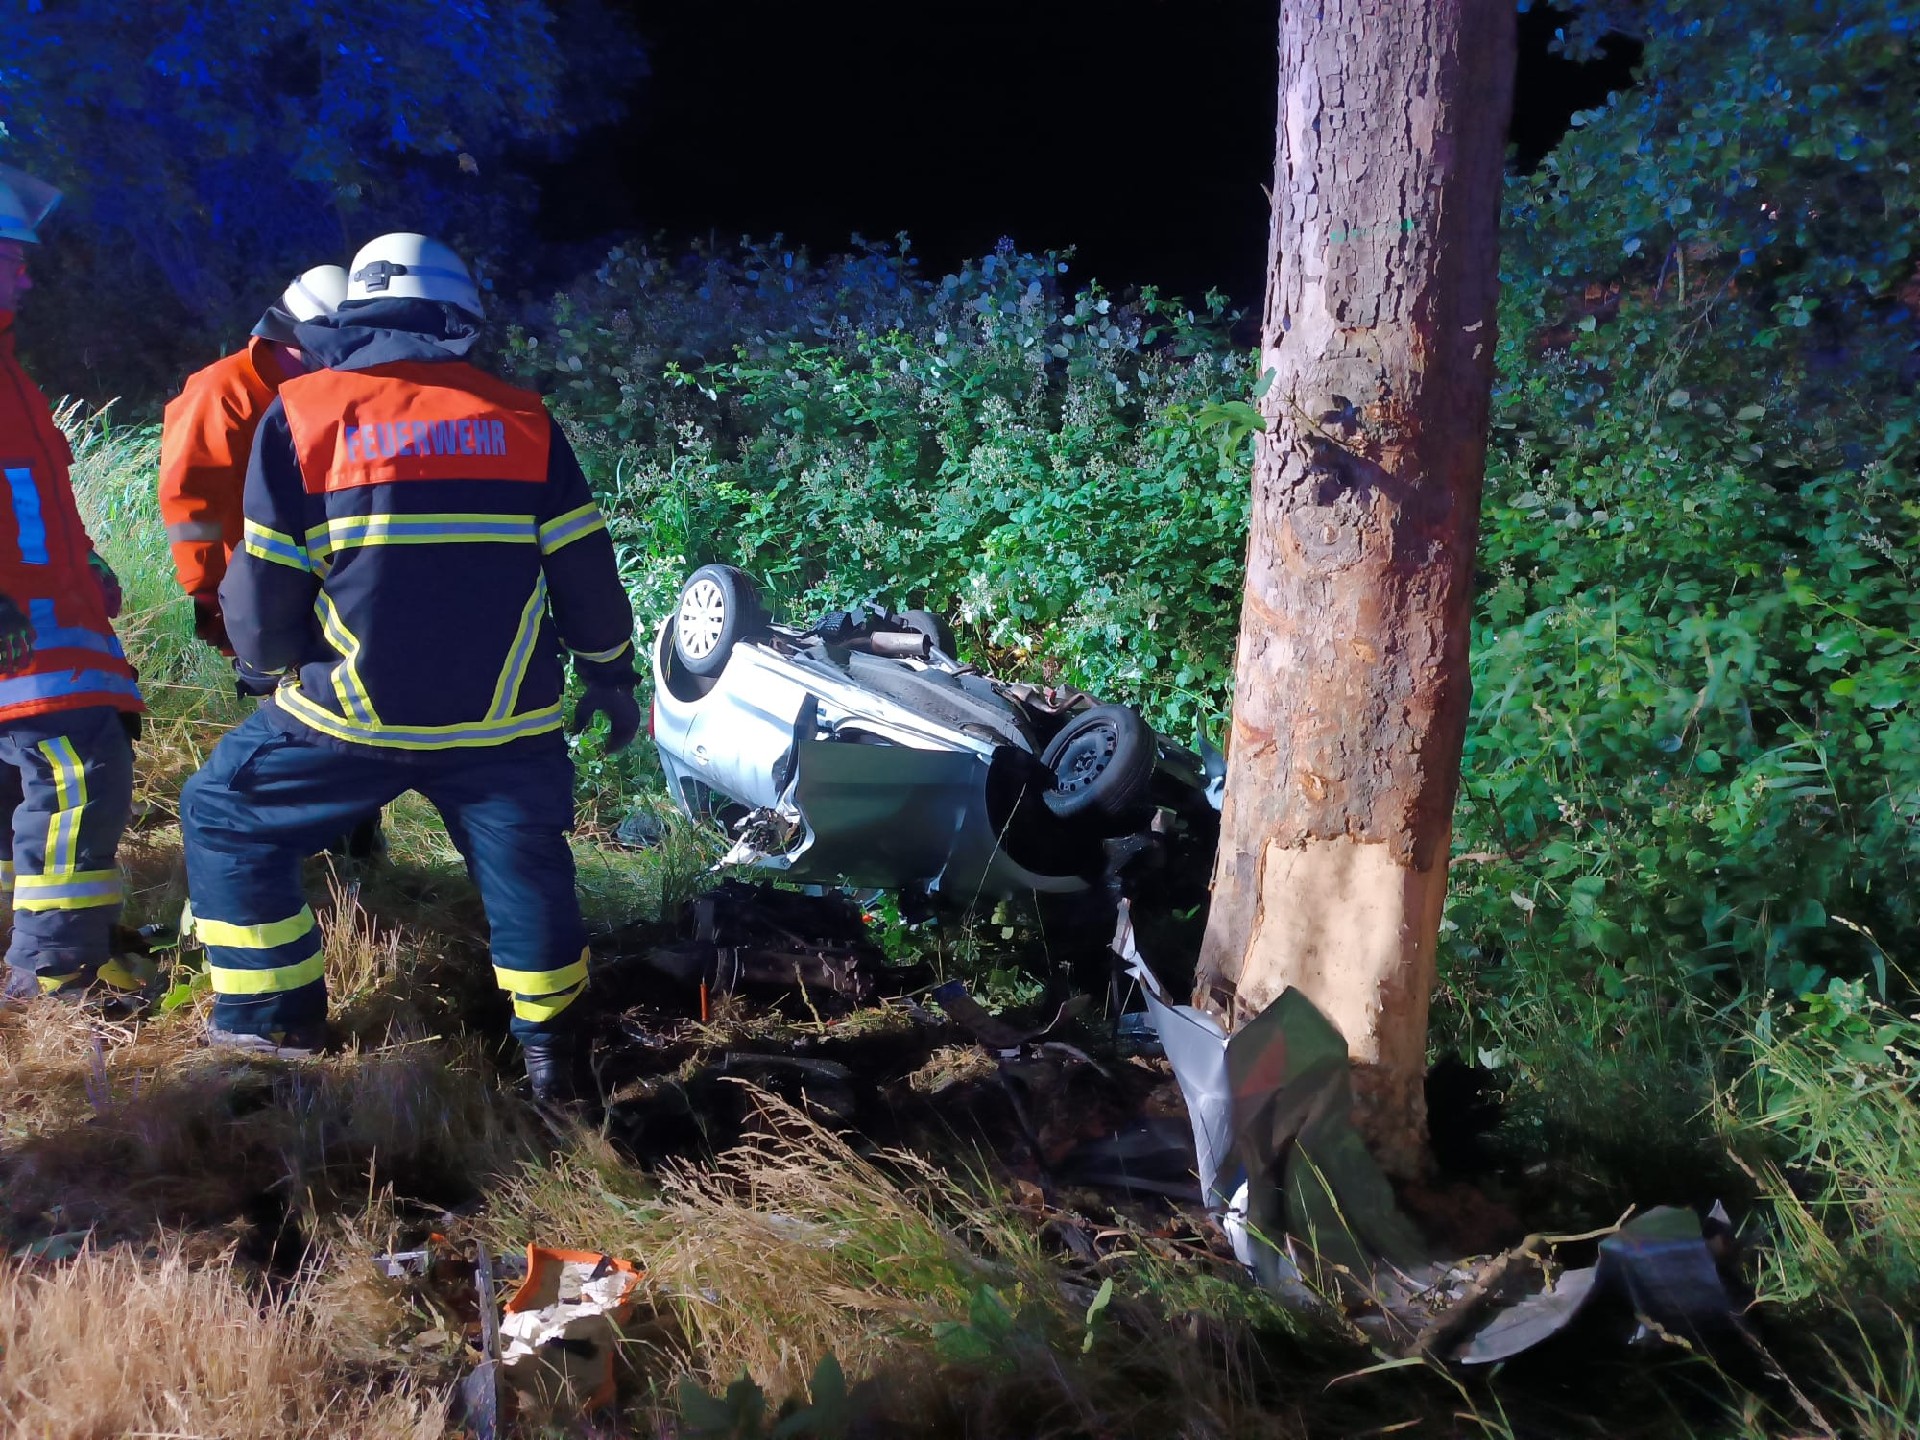 Auto kracht gegen Baum – Feuerwehr rettet schwer verletzten Fahrer